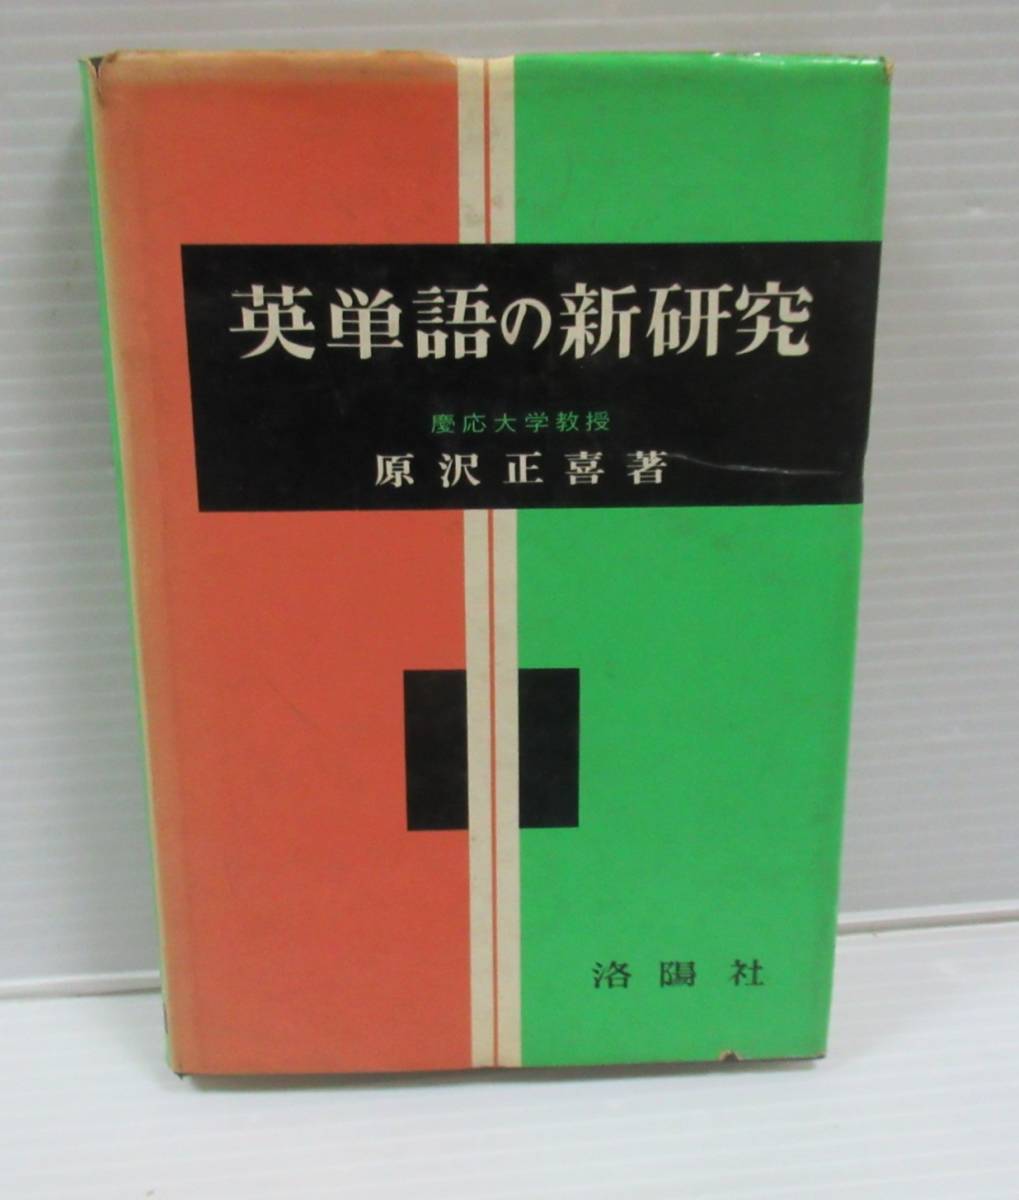 ■英単語の新研究　原沢正喜　洛陽社　1958年